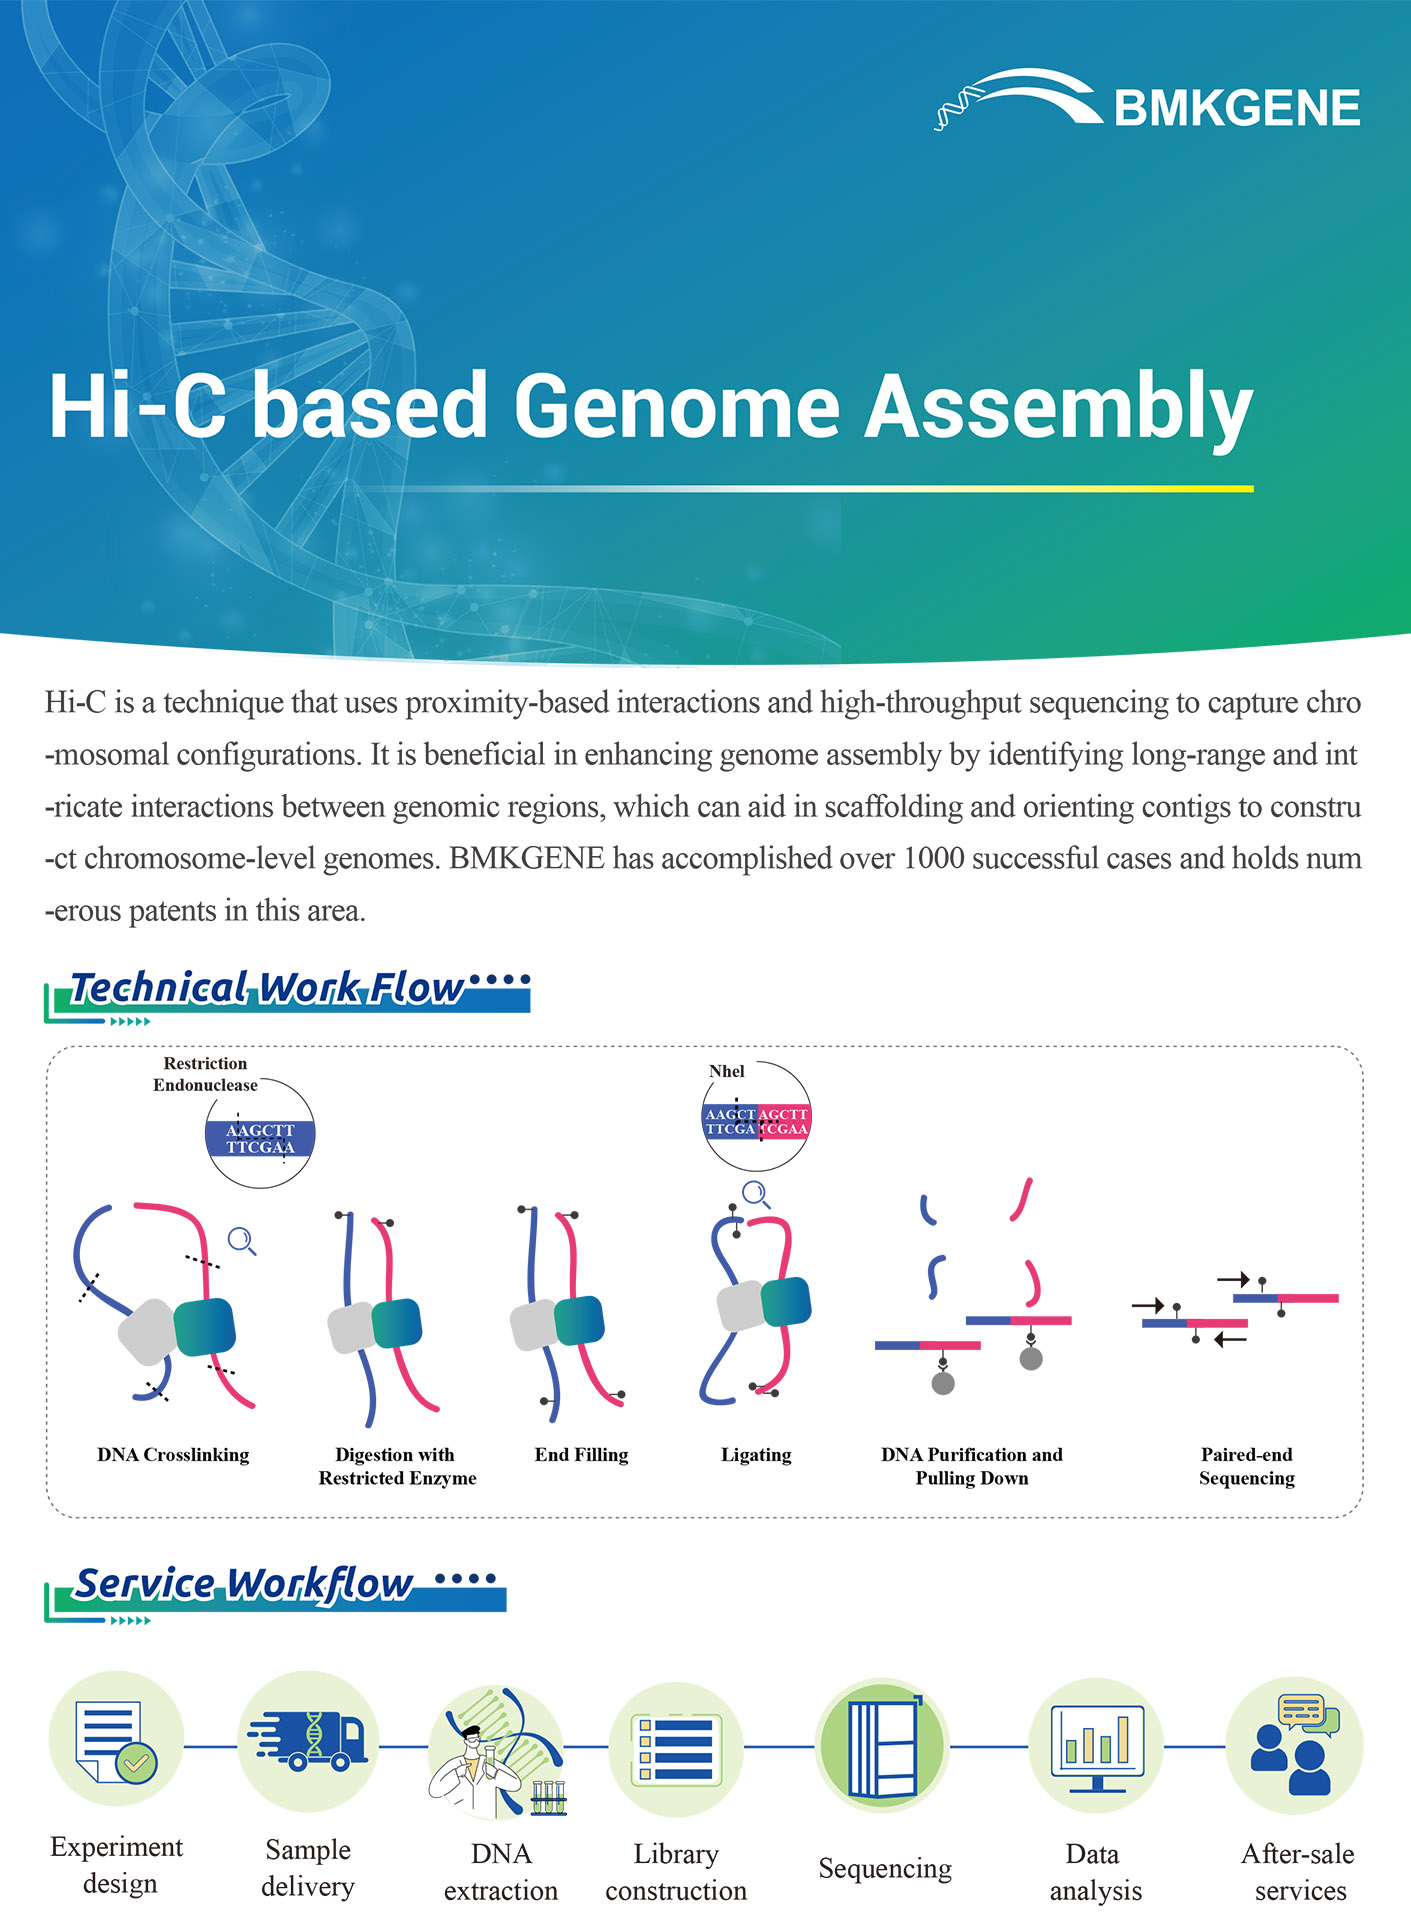 https://www.bmkgene.com/uploads/Hi-C-based-Genome-Assembly-BMKGENE-2310.pdf